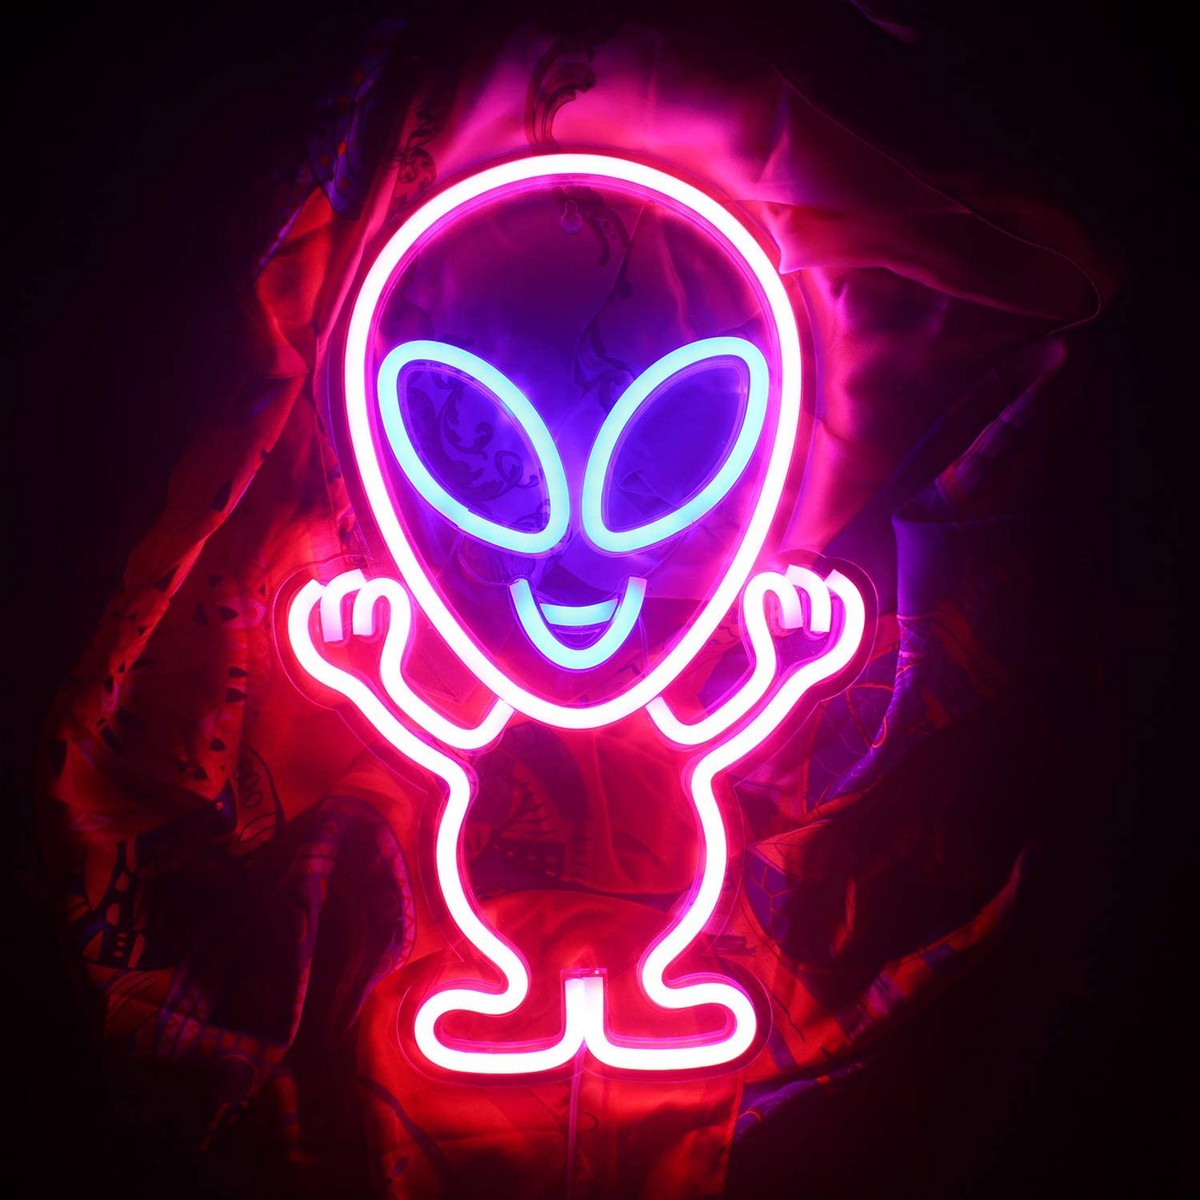 logo neon led bersinar di dinding - alien